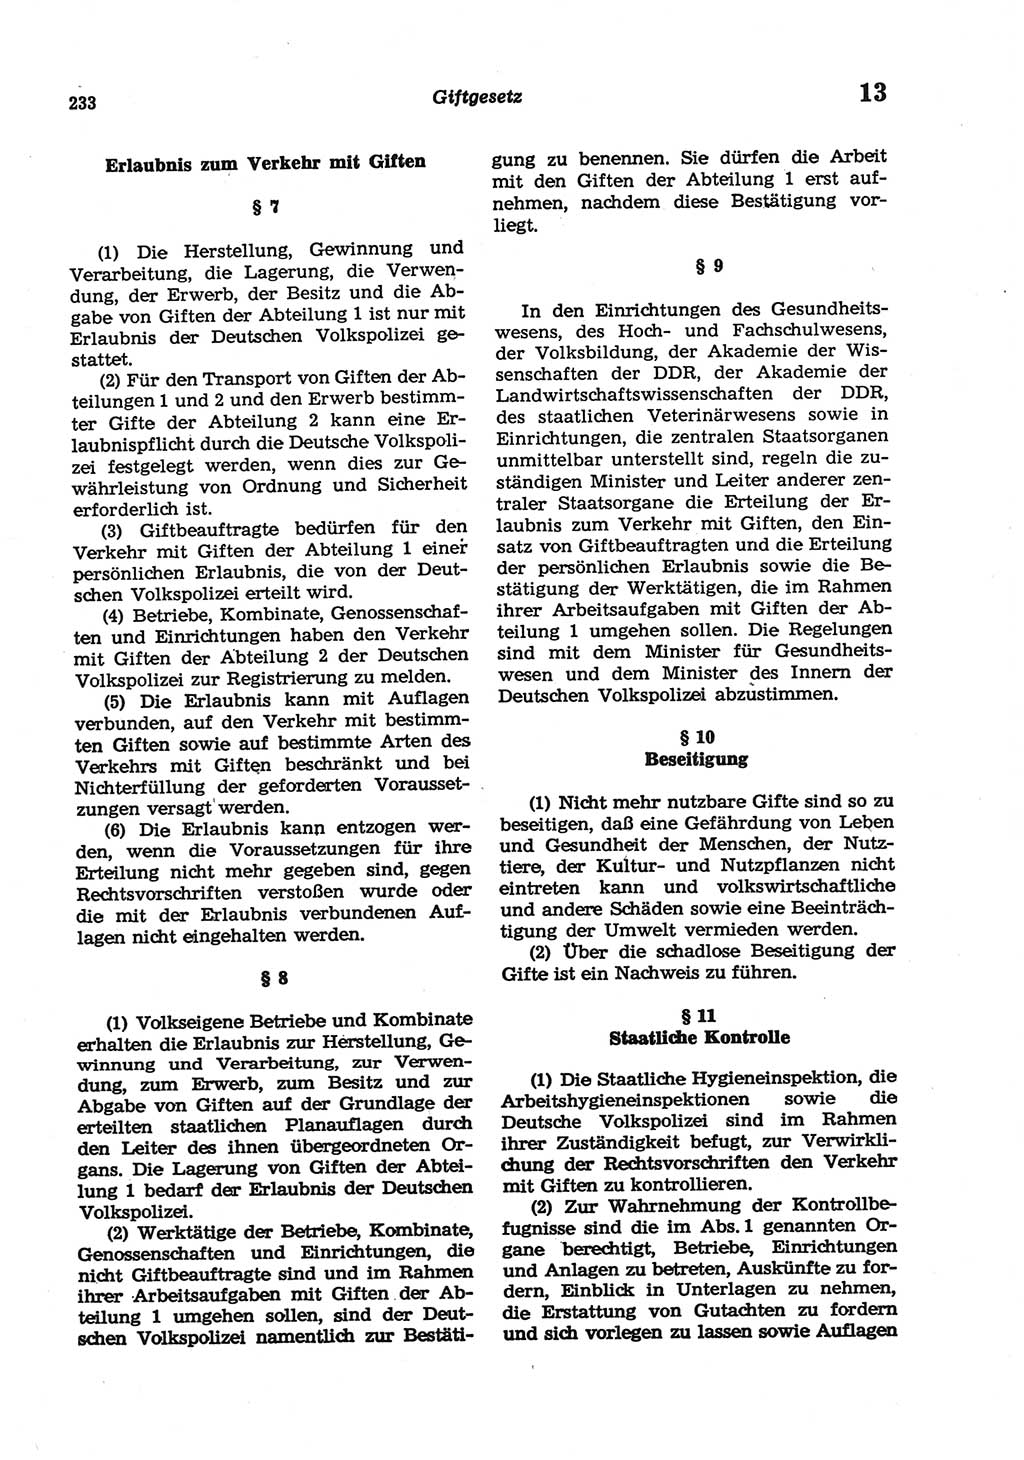 Strafgesetzbuch (StGB) der Deutschen Demokratischen Republik (DDR) und angrenzende Gesetze und Bestimmungen 1977, Seite 233 (StGB DDR Ges. Best. 1977, S. 233)